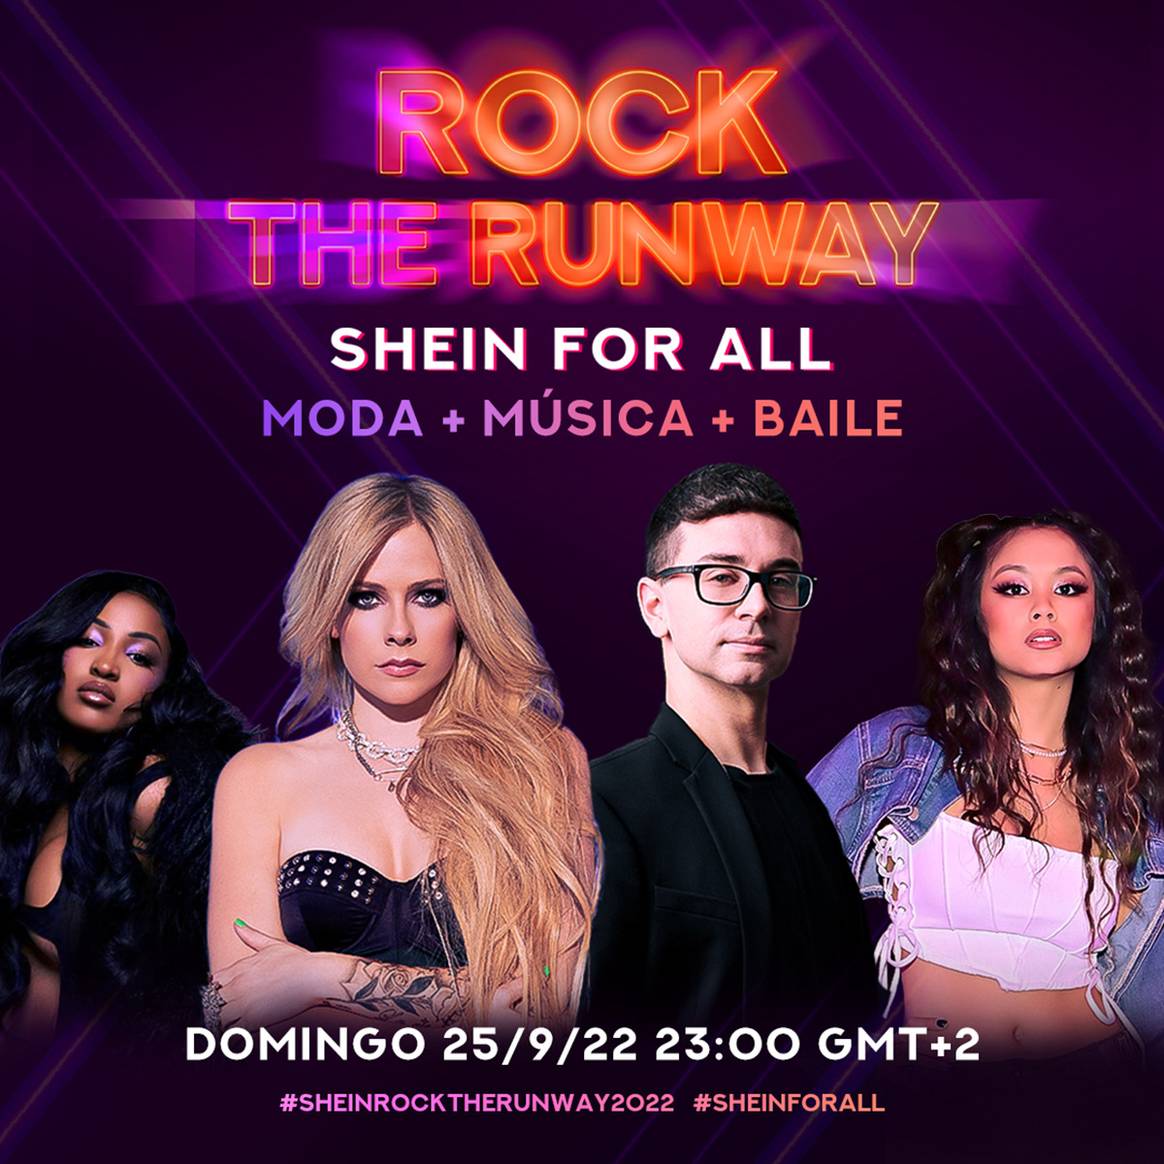 Photo Credits: Cartel promocional del evento “Rock The Runway” de Shein. Shein, página oficial de Facebook.